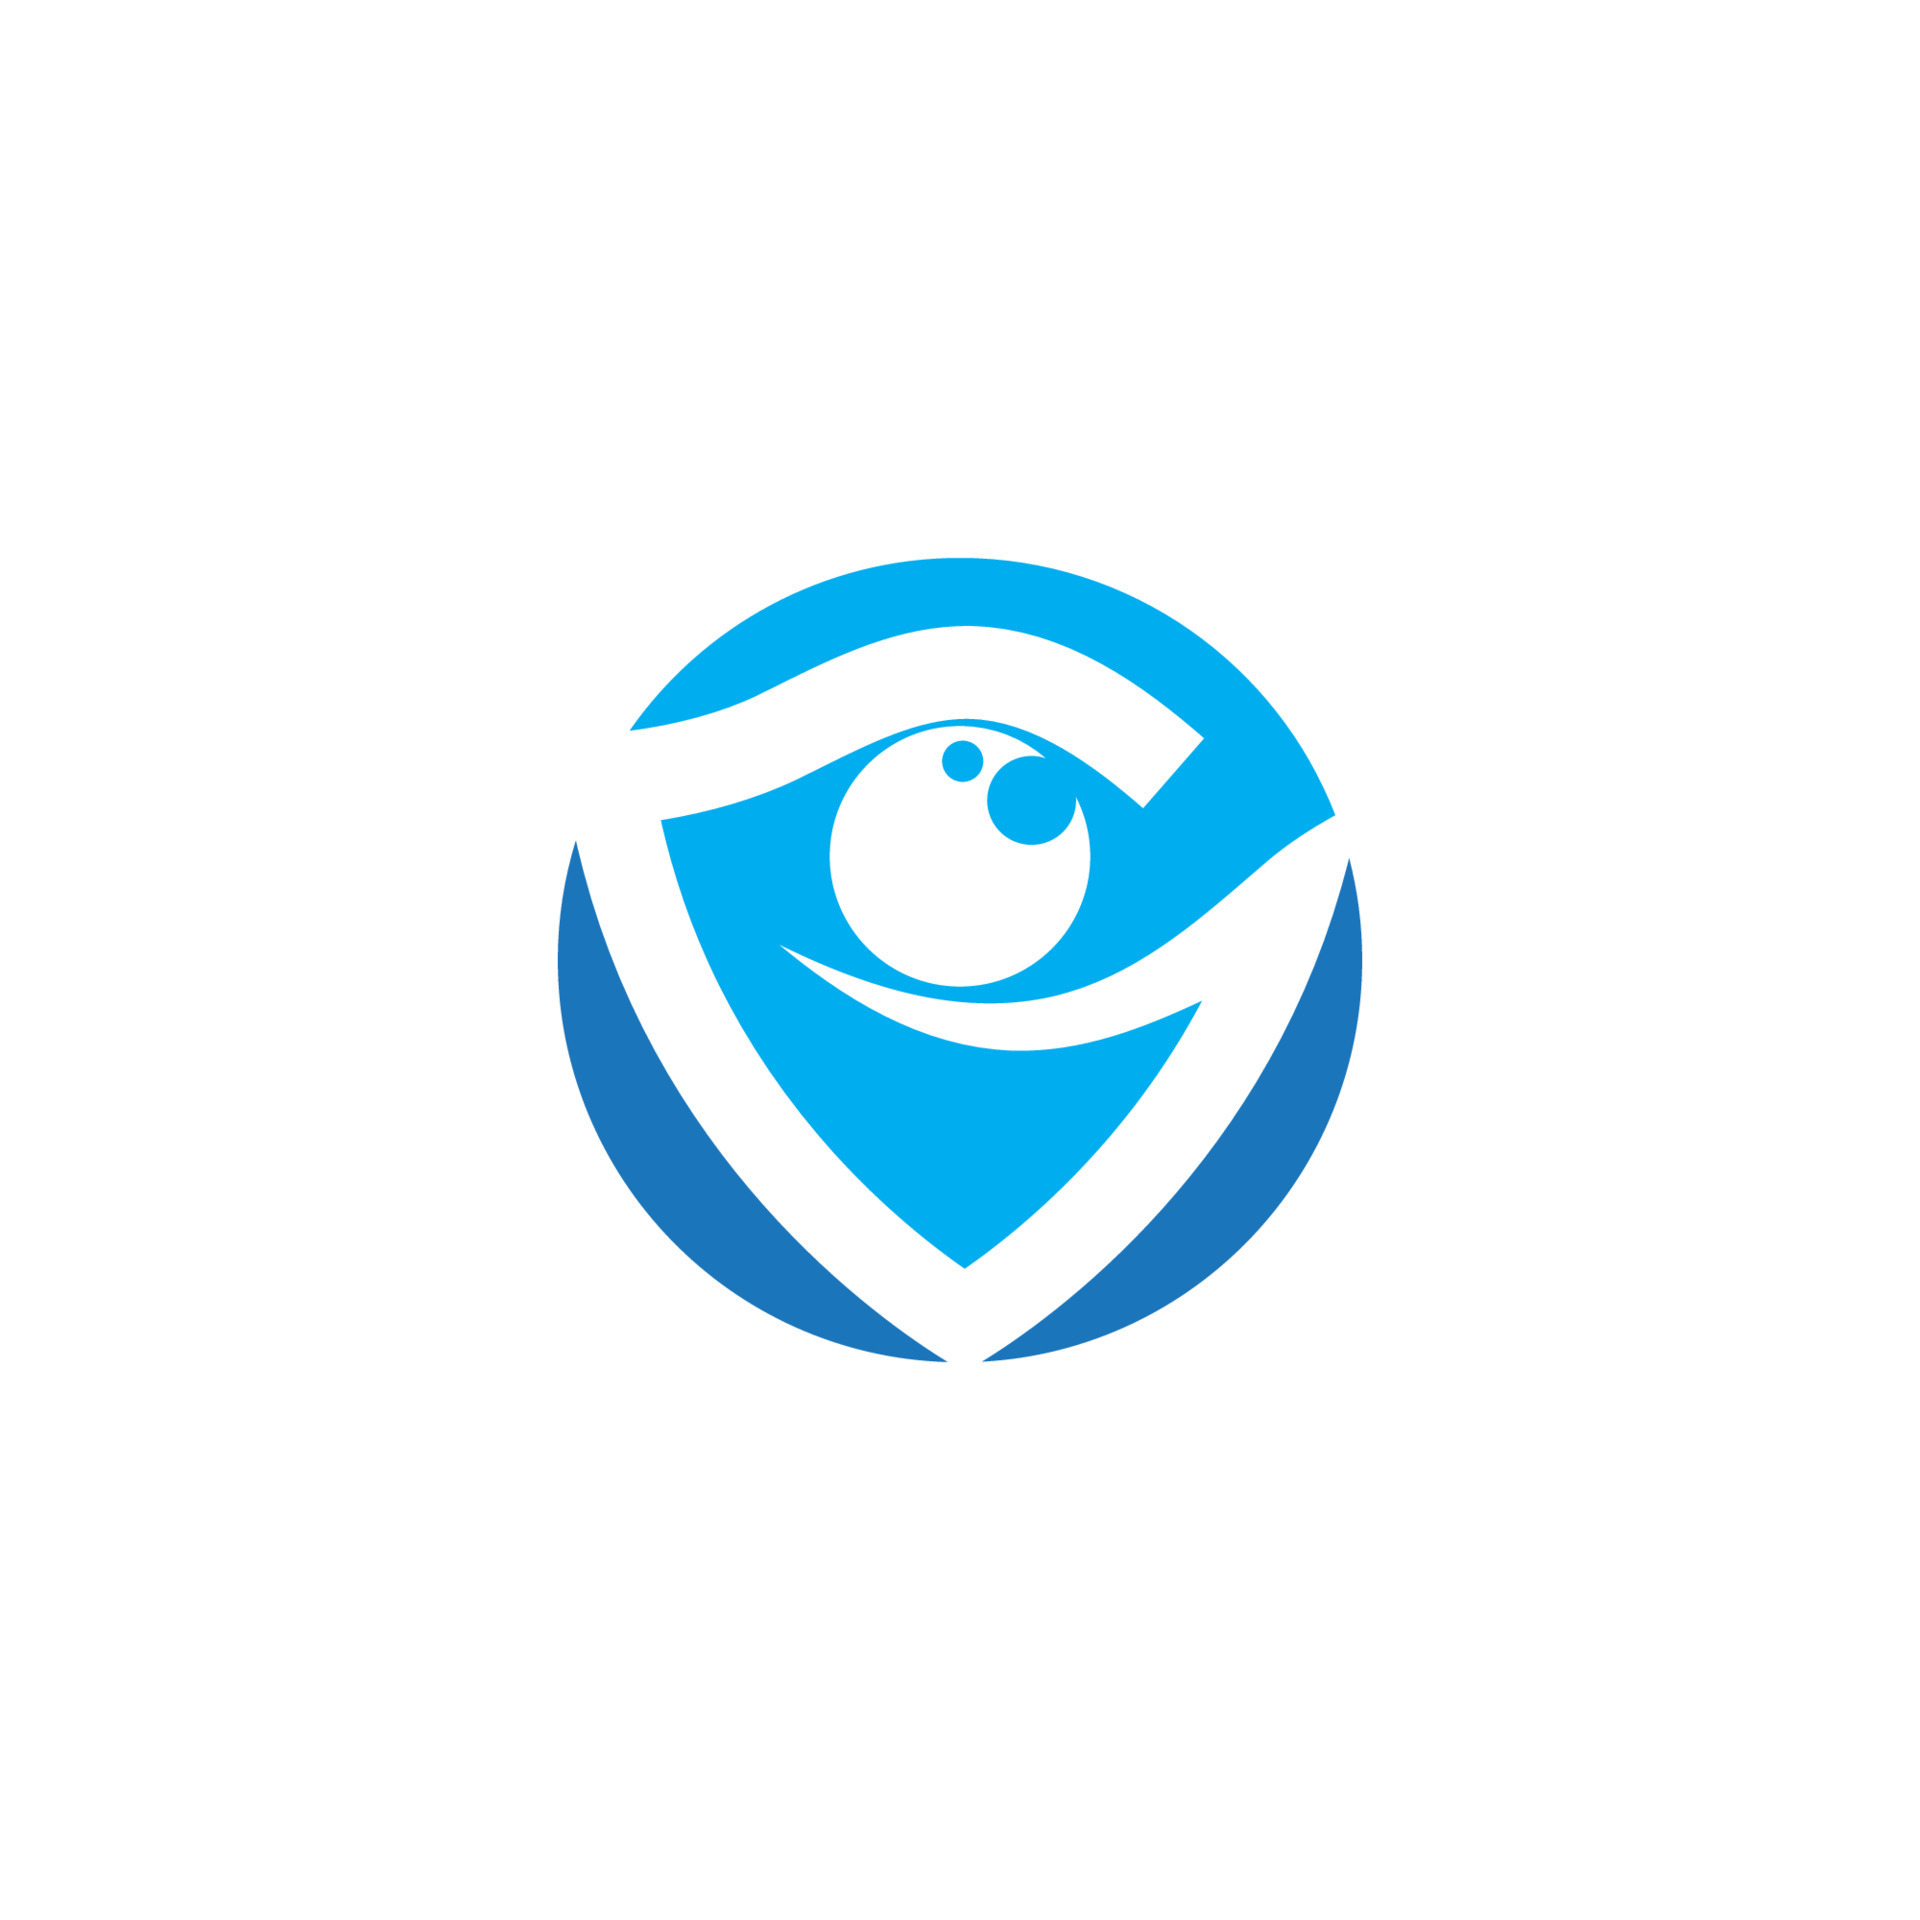 Eye Care vector logo design 13209542 Vector Art at Vecteezy